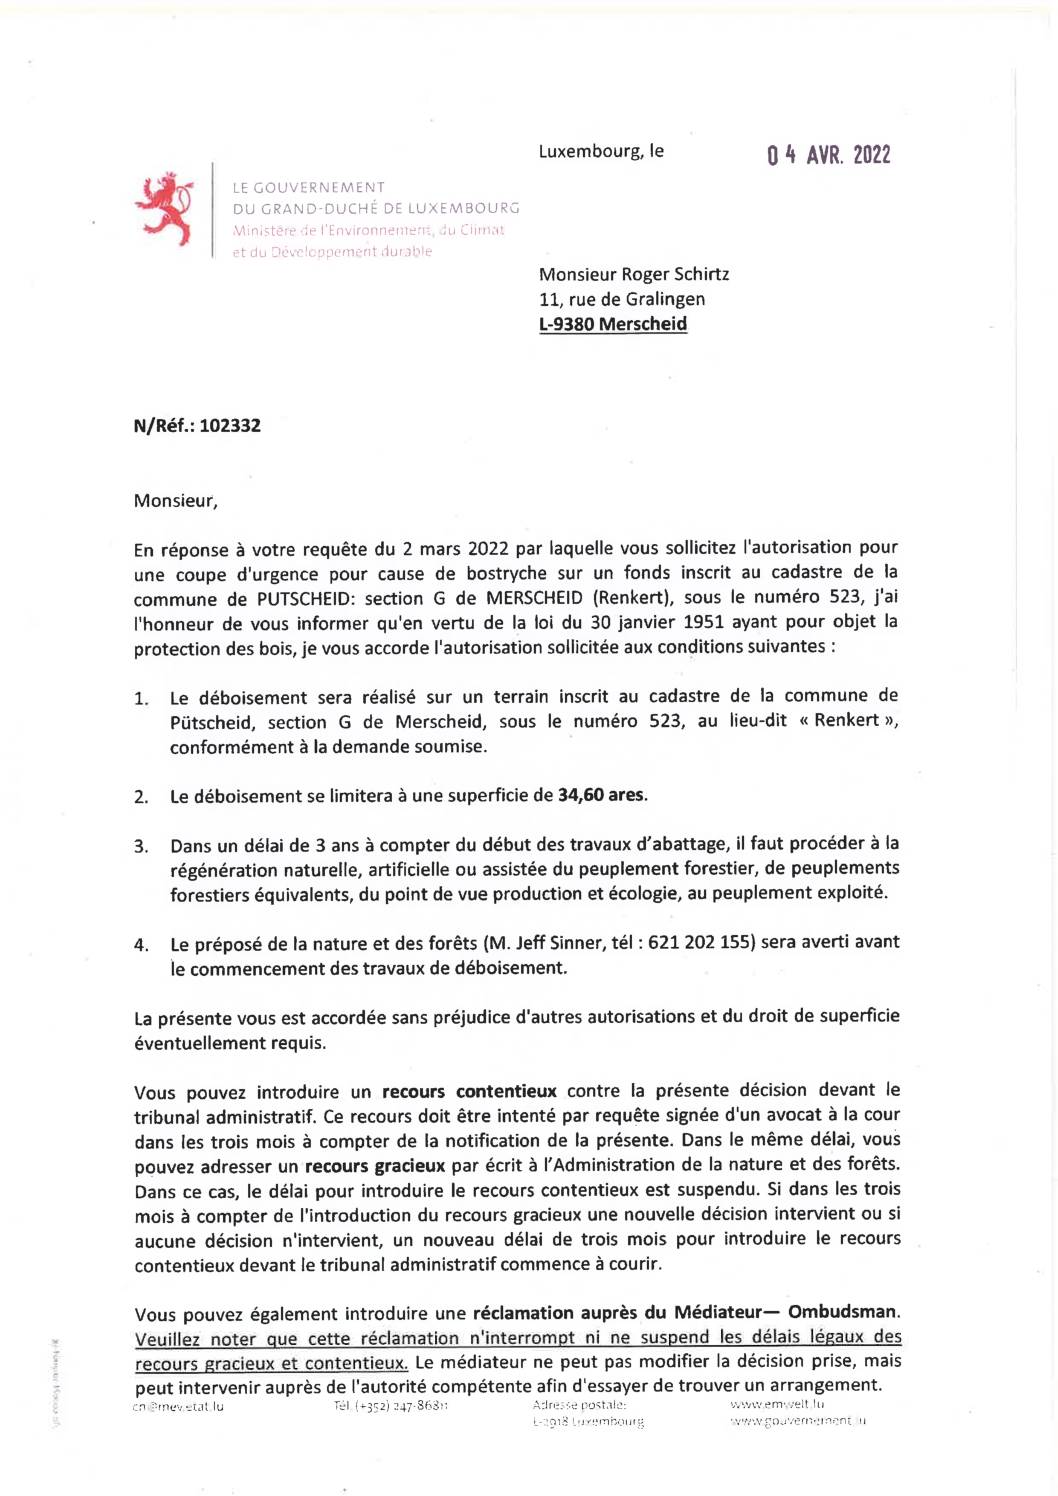 Notification de decision pour le dossier 102332 Coupe d'urgence pour cause de Bostryche - Renkert